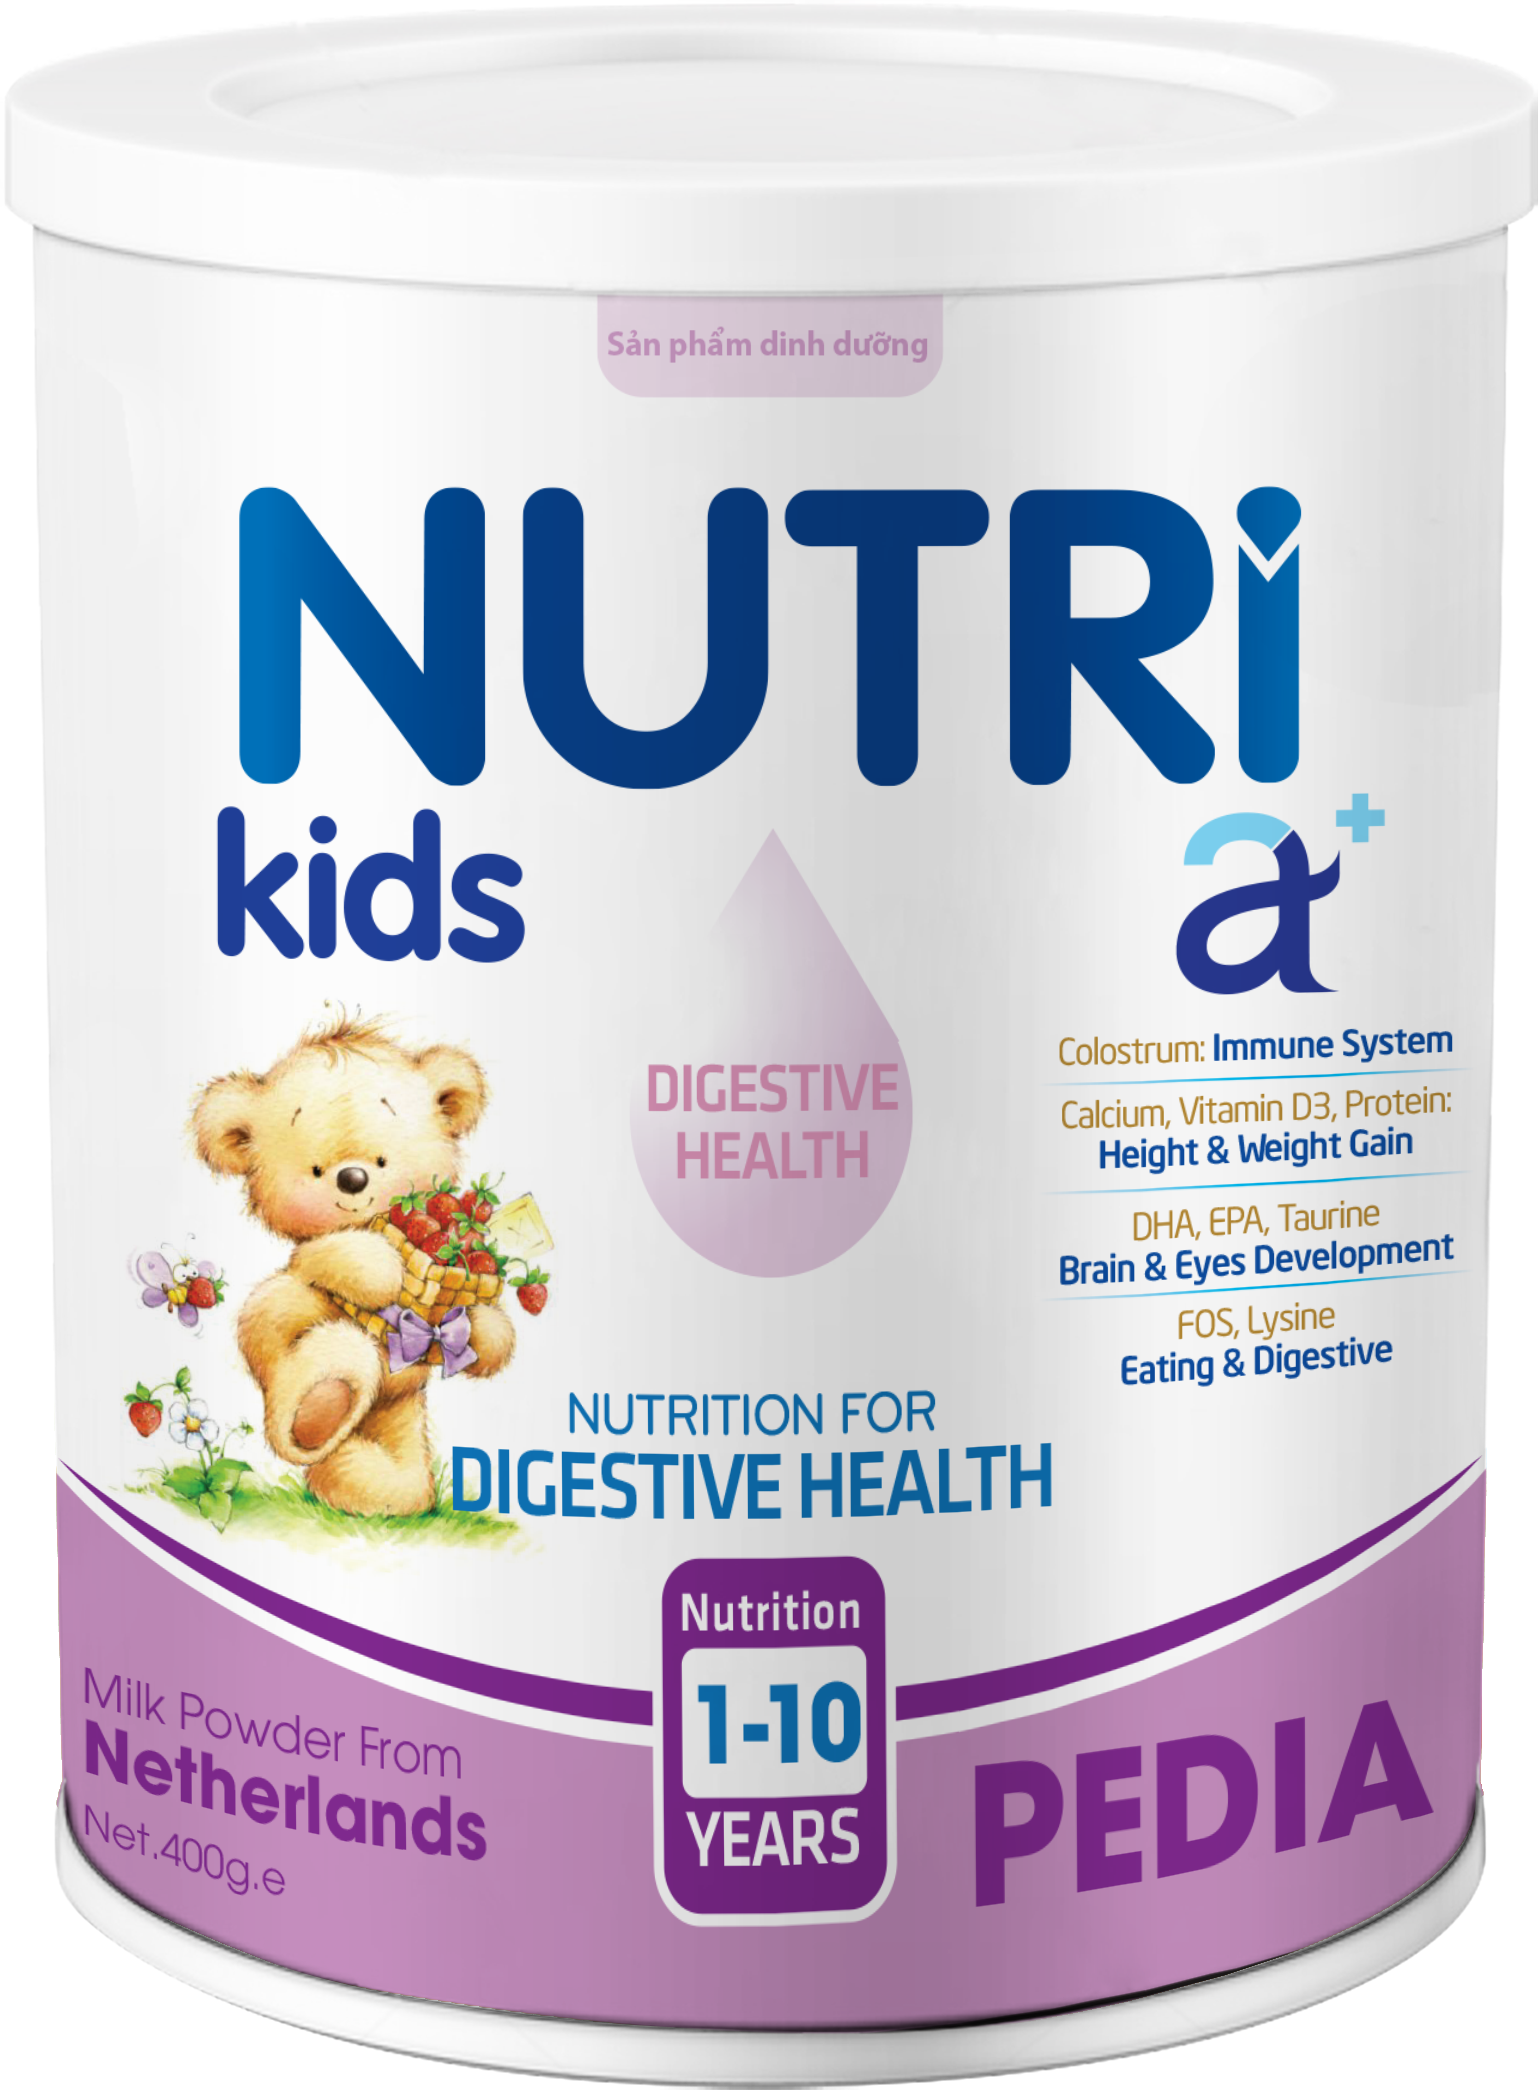 NUTRI KIDS A+ PEDIA 400g